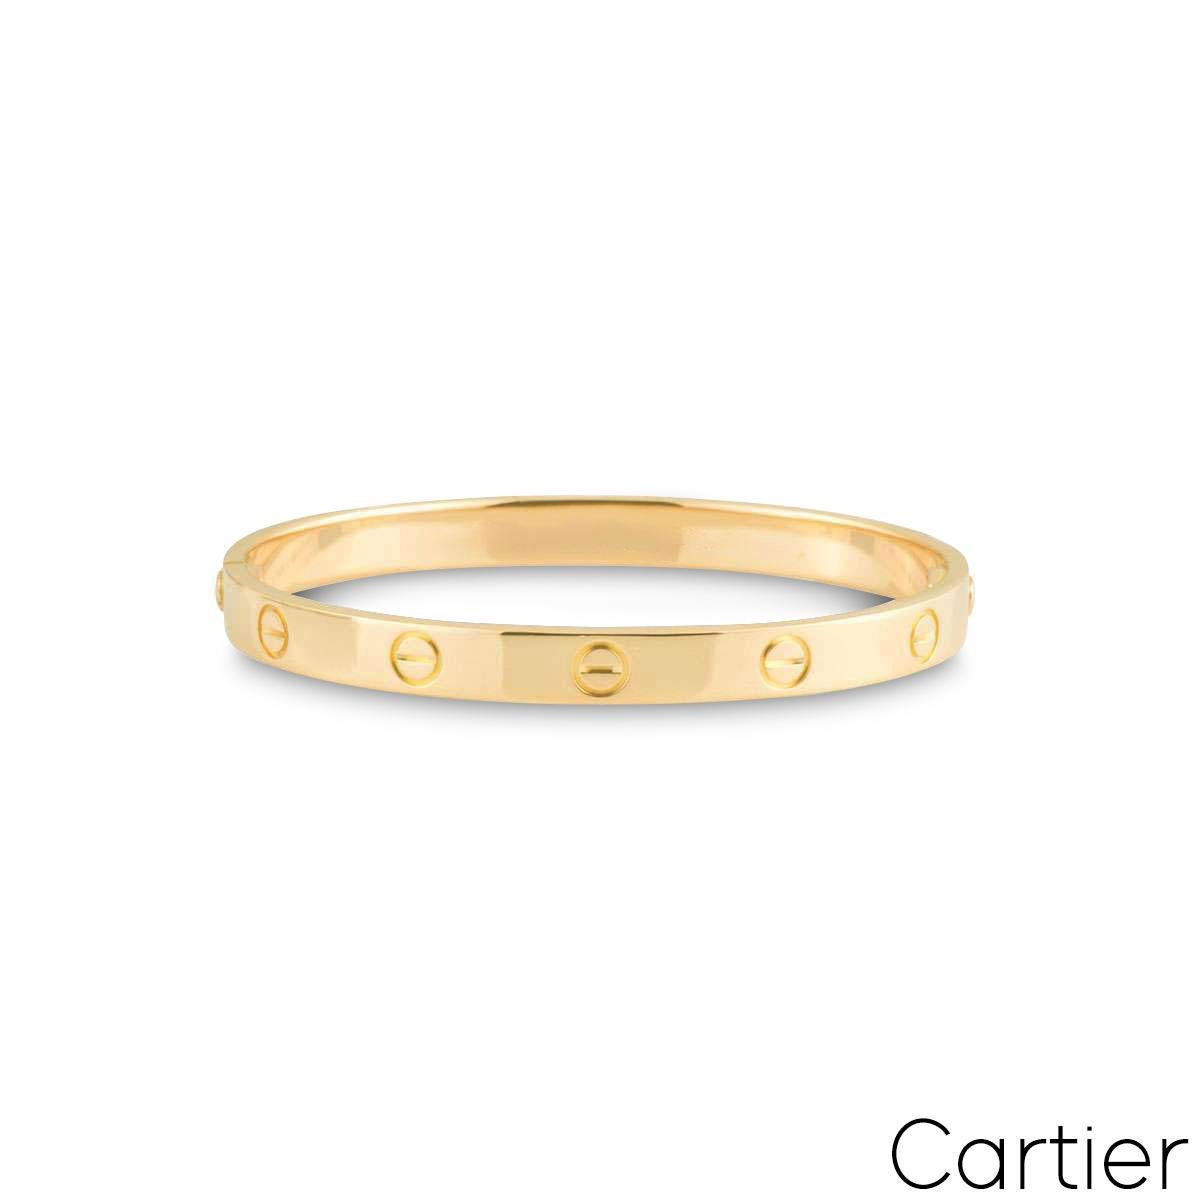 Un bracelet Cartier en or jaune 18 carats de la collection Love. Le bracelet arbore le motif de la vis sur le pourtour extérieur et présente le nouveau style de fixation de la vis. Ce bracelet est de taille 16 et pèse 29,9 grammes. 

Le bracelet est